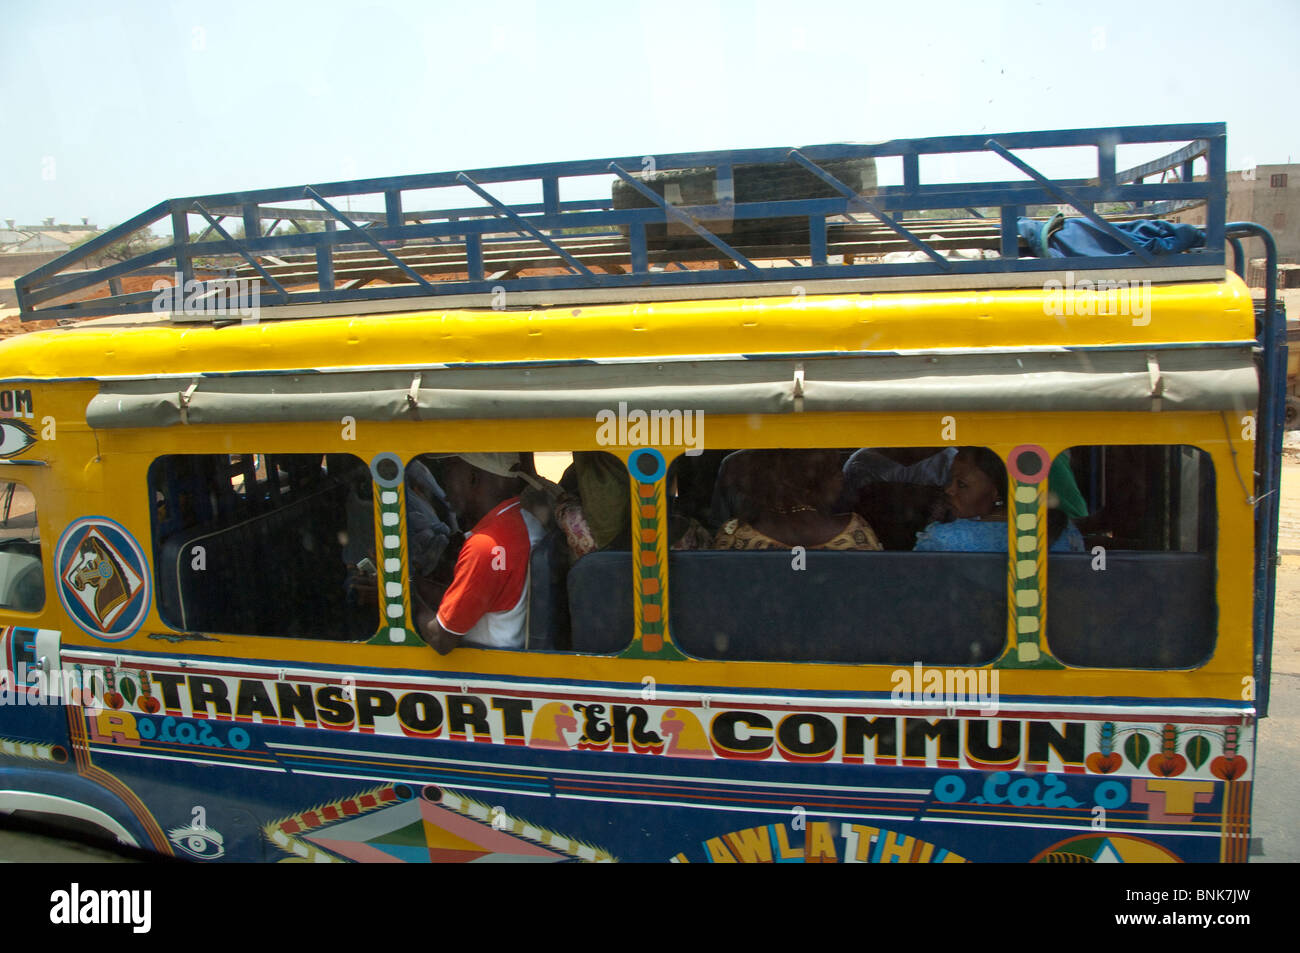 Afrique, Sénégal, Dakar. Bus bondé typique. Banque D'Images